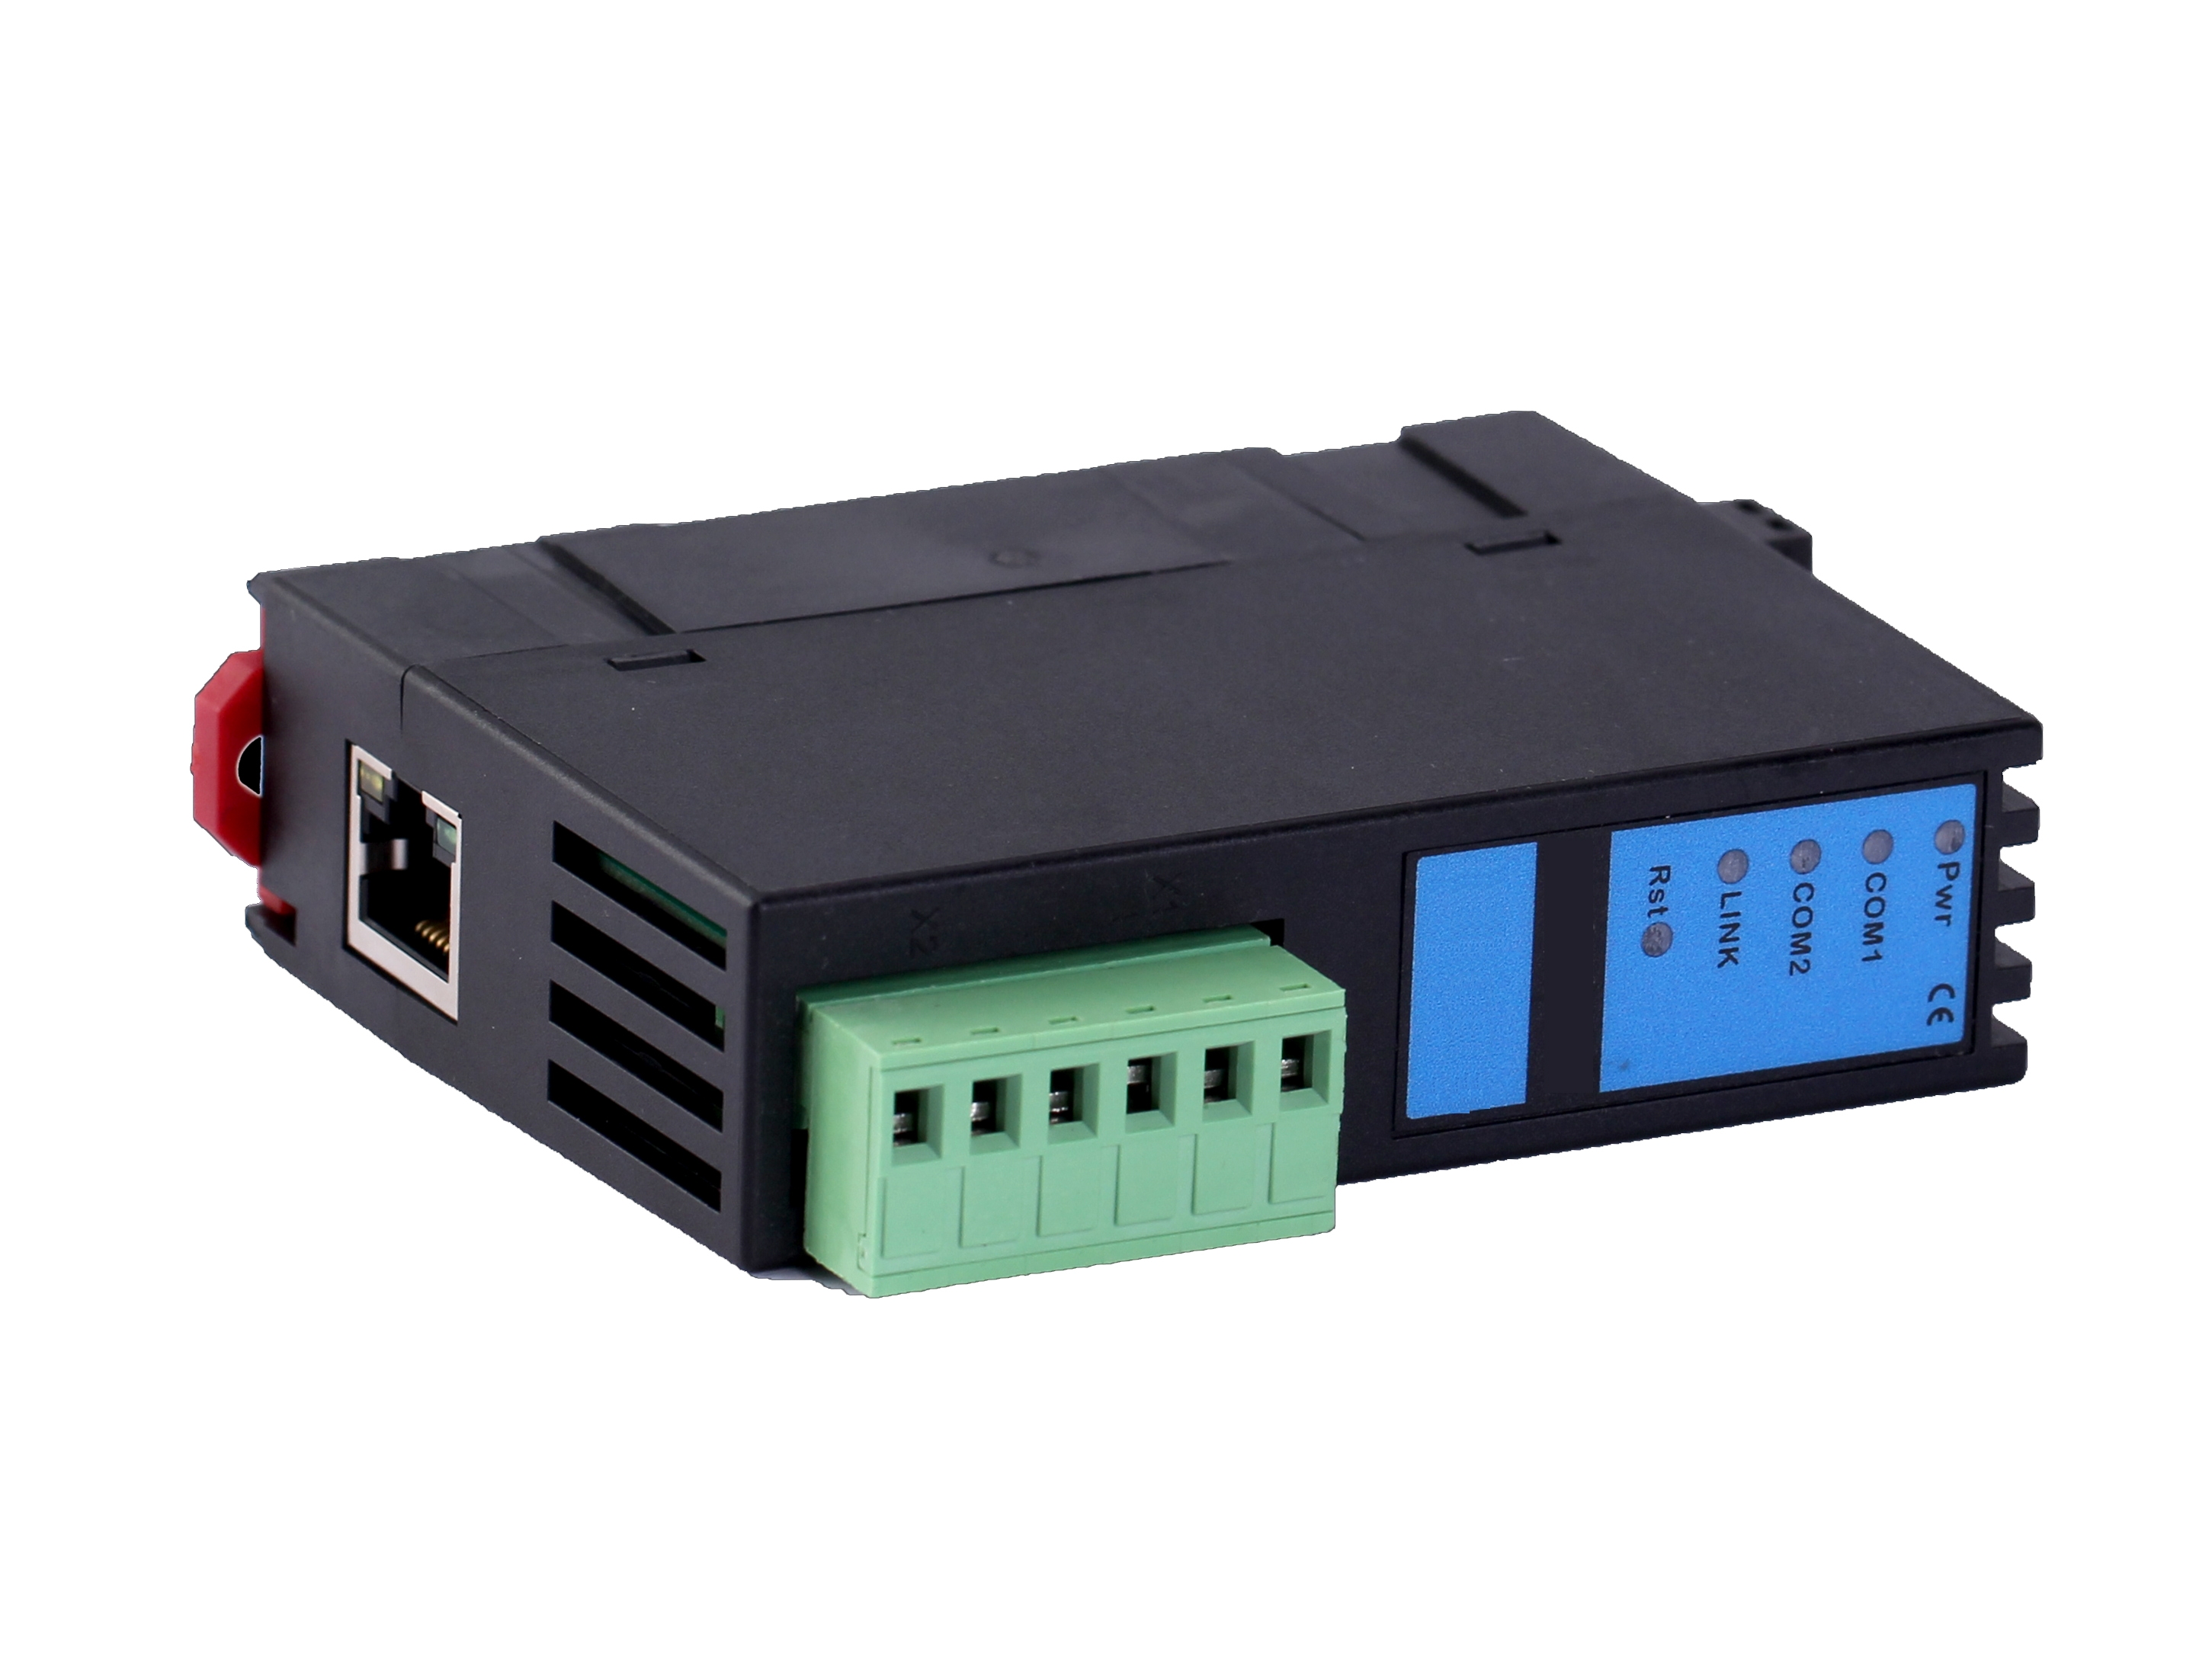 ENET-DL是一款面向电能表及电力系统线路保护装置的协议转换器。该协议转换器可将DL/T645-2007、DL/T645-1997及IEC103规约的电能表及电力系统线路保护装置的串口协议转换成ModbusTCP协议，通过以太网进行数据采集和监控。 ENET-DL不占用电能表通讯口，上位机软件通过以太网对规约串口数据监控的同时，电能表通讯口原设备访问不受影响。